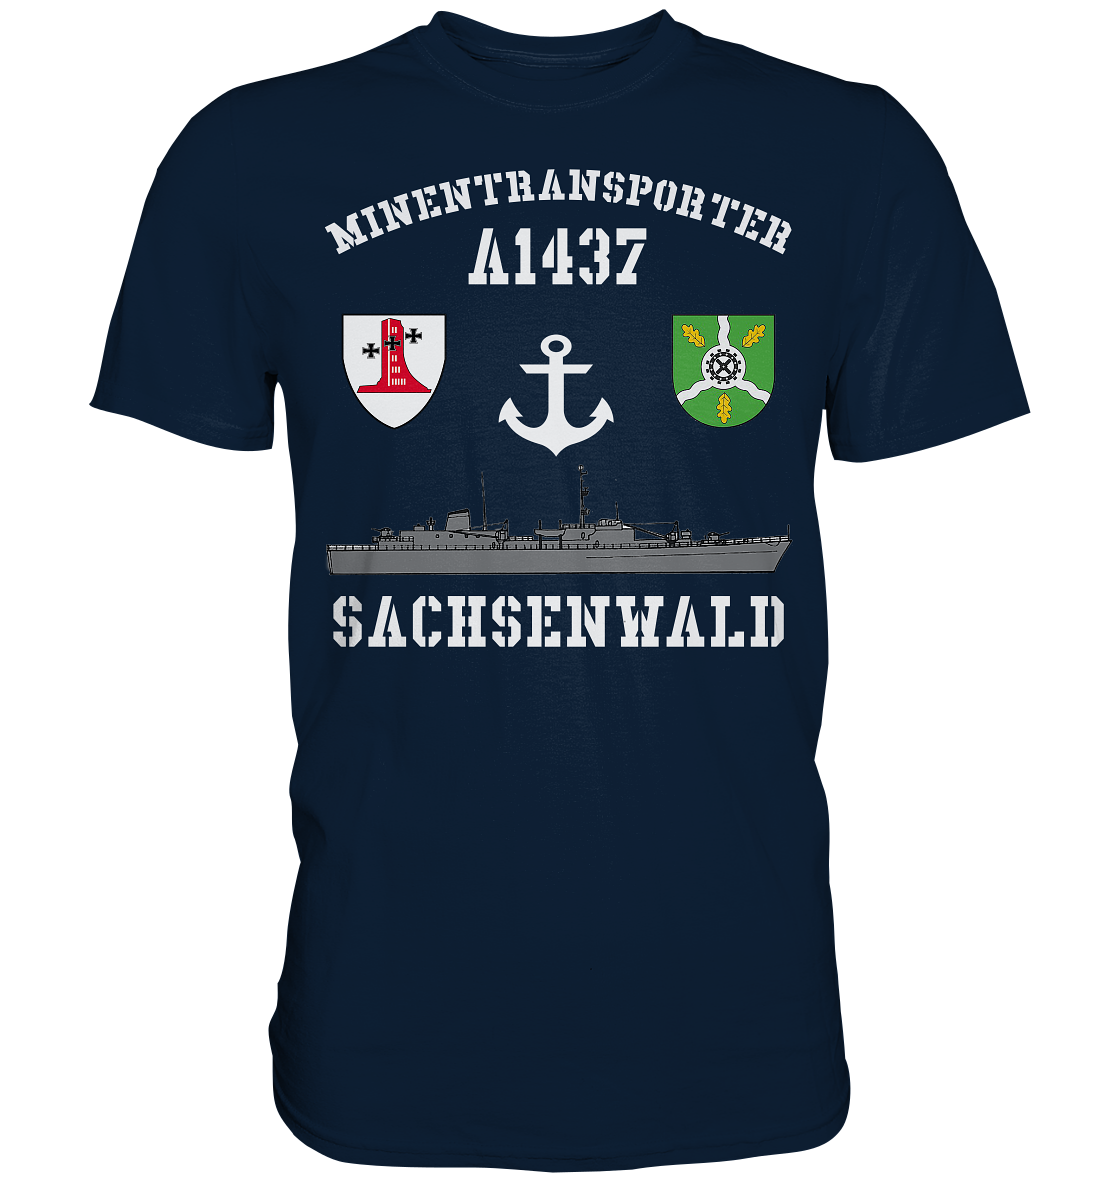 Minentransporter A1437 SACHSENWALD - Premium Shirt